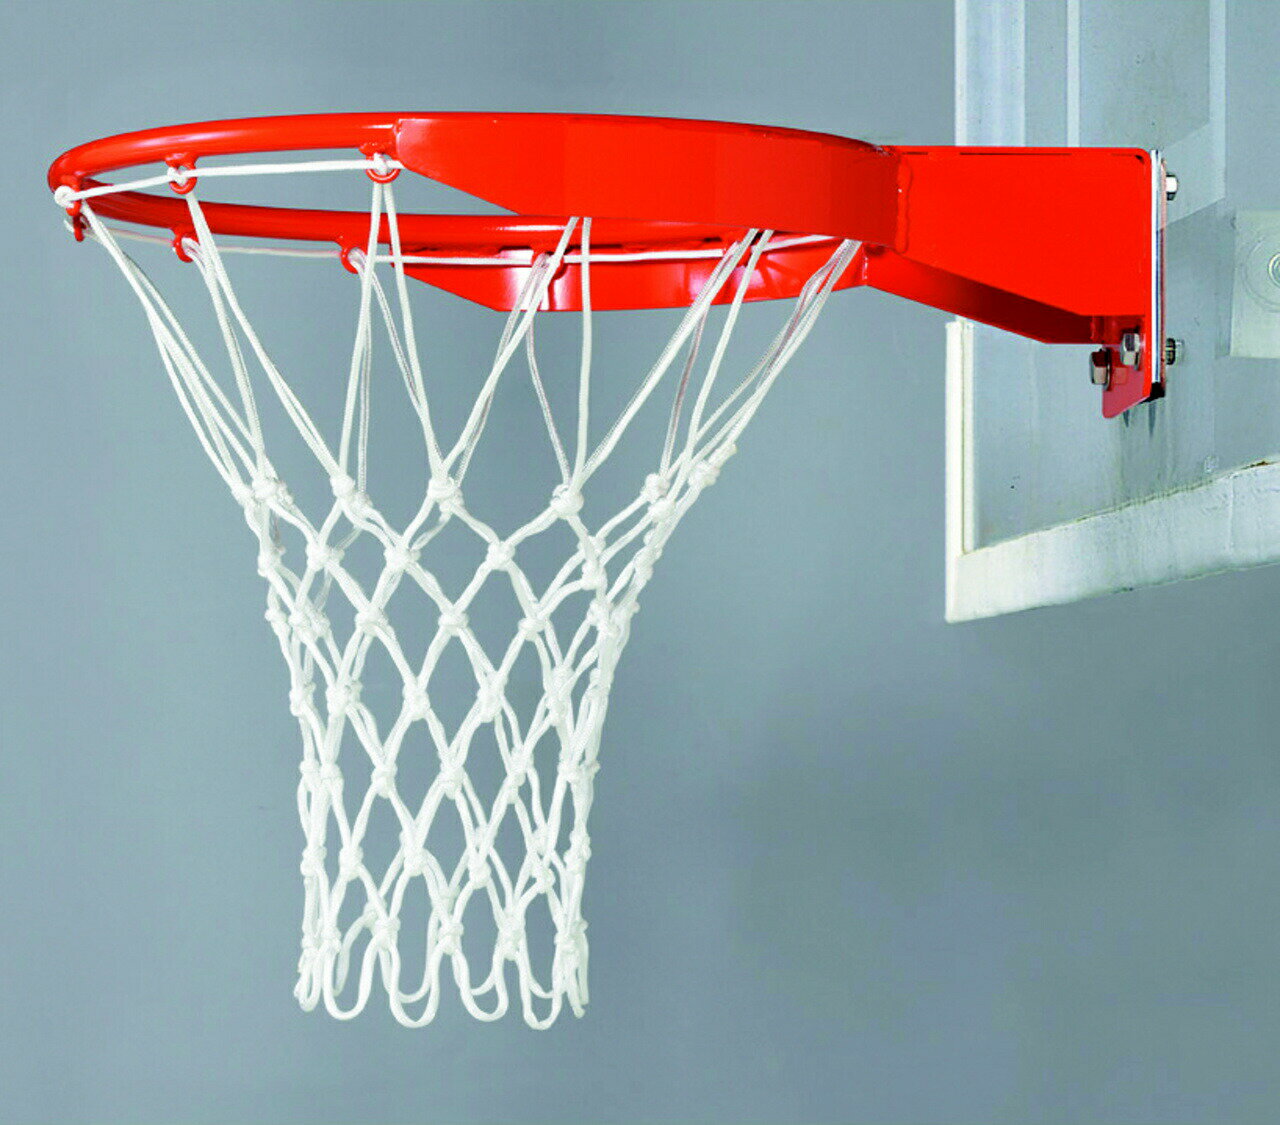 備品 asics アシックス CNBB01 バスケットボール 有結節 AW バスケットゴールネット 設備・備品 CNBB01 01